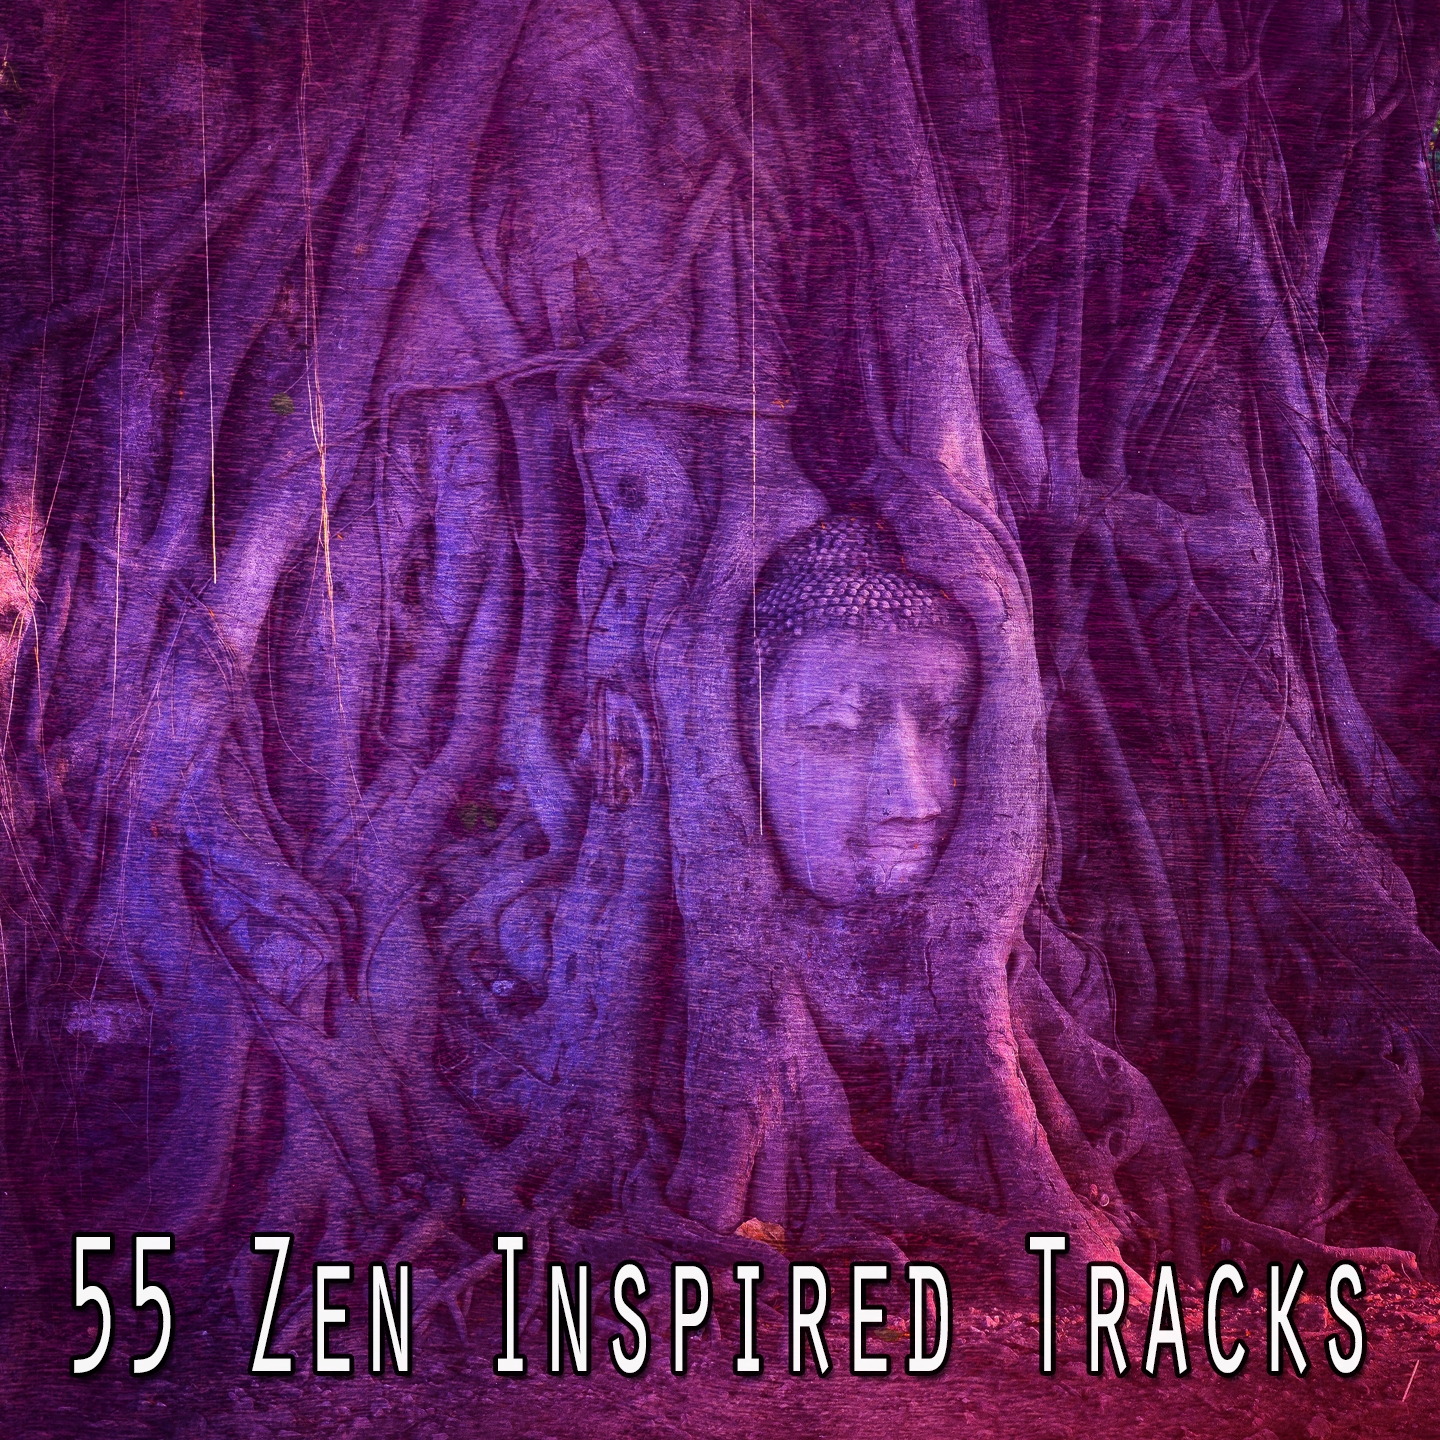 55 Zen Inspired Tracks